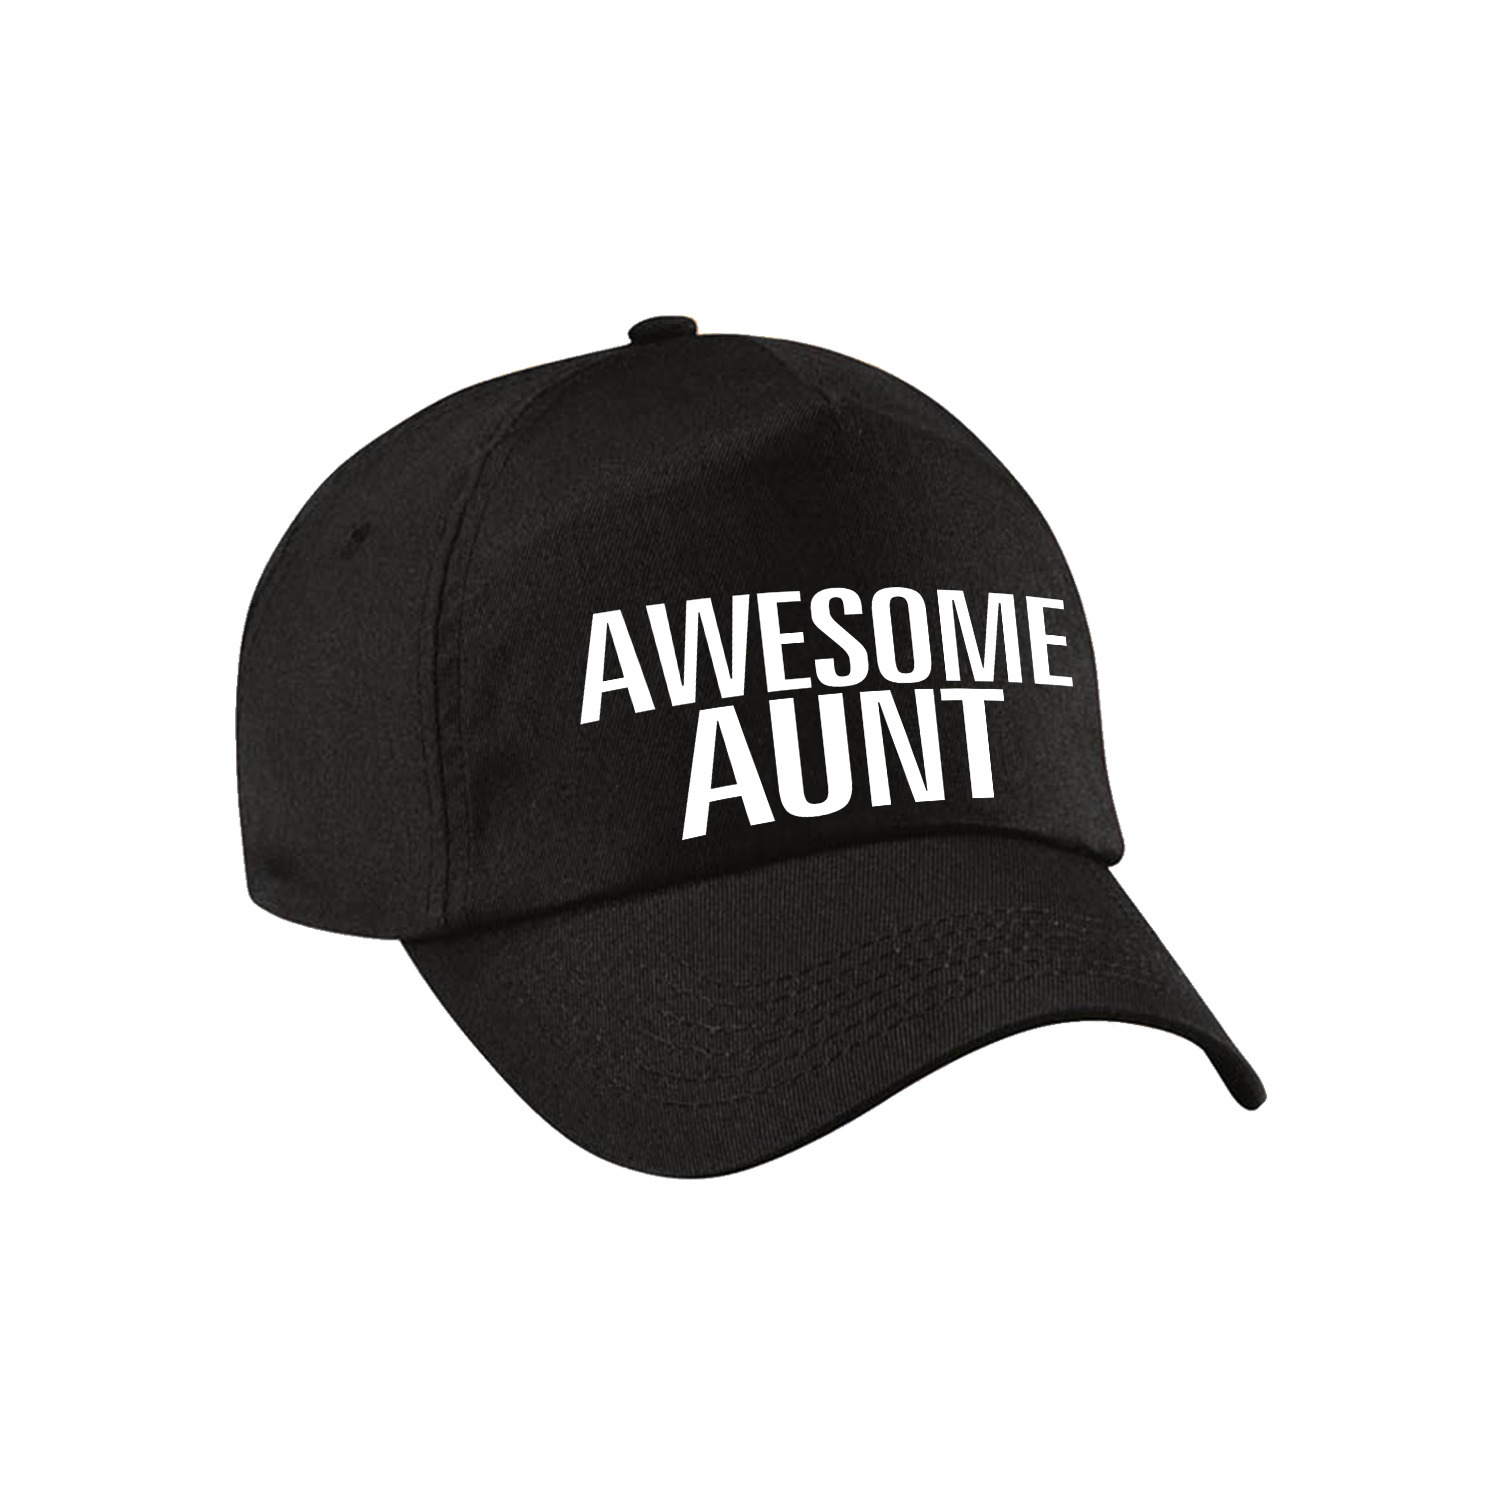 Awesome aunt pet-cap voor tante zwart voor dames